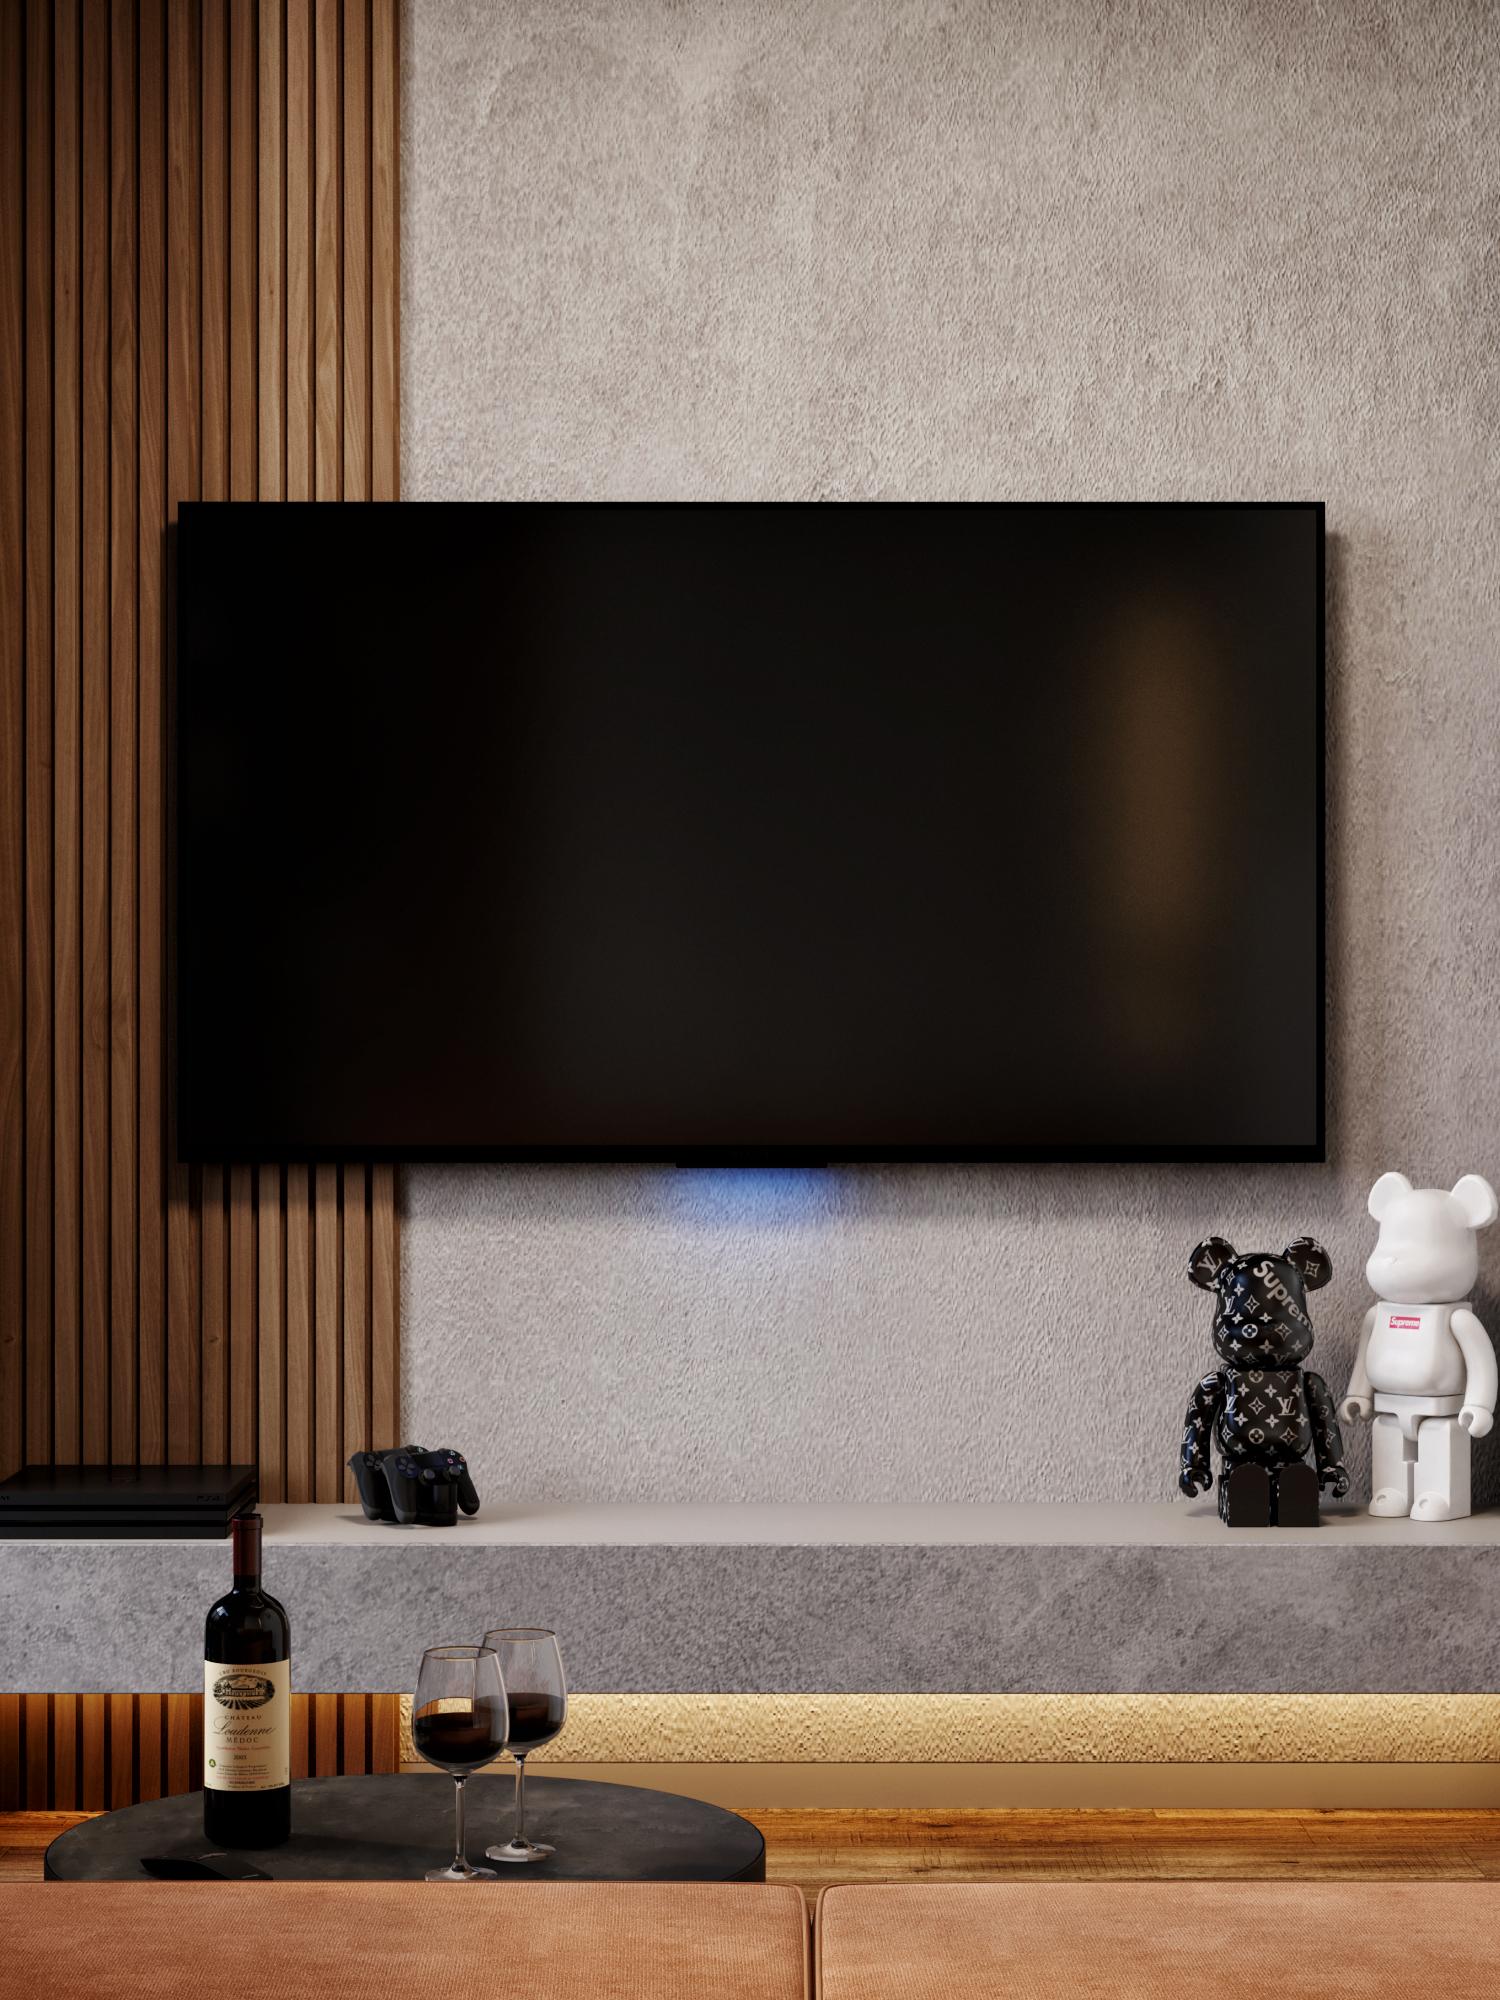 Интерьер cтеной с телевизором, телевизором на стене, керамогранитом на стену с телевизором и подсветкой настенной